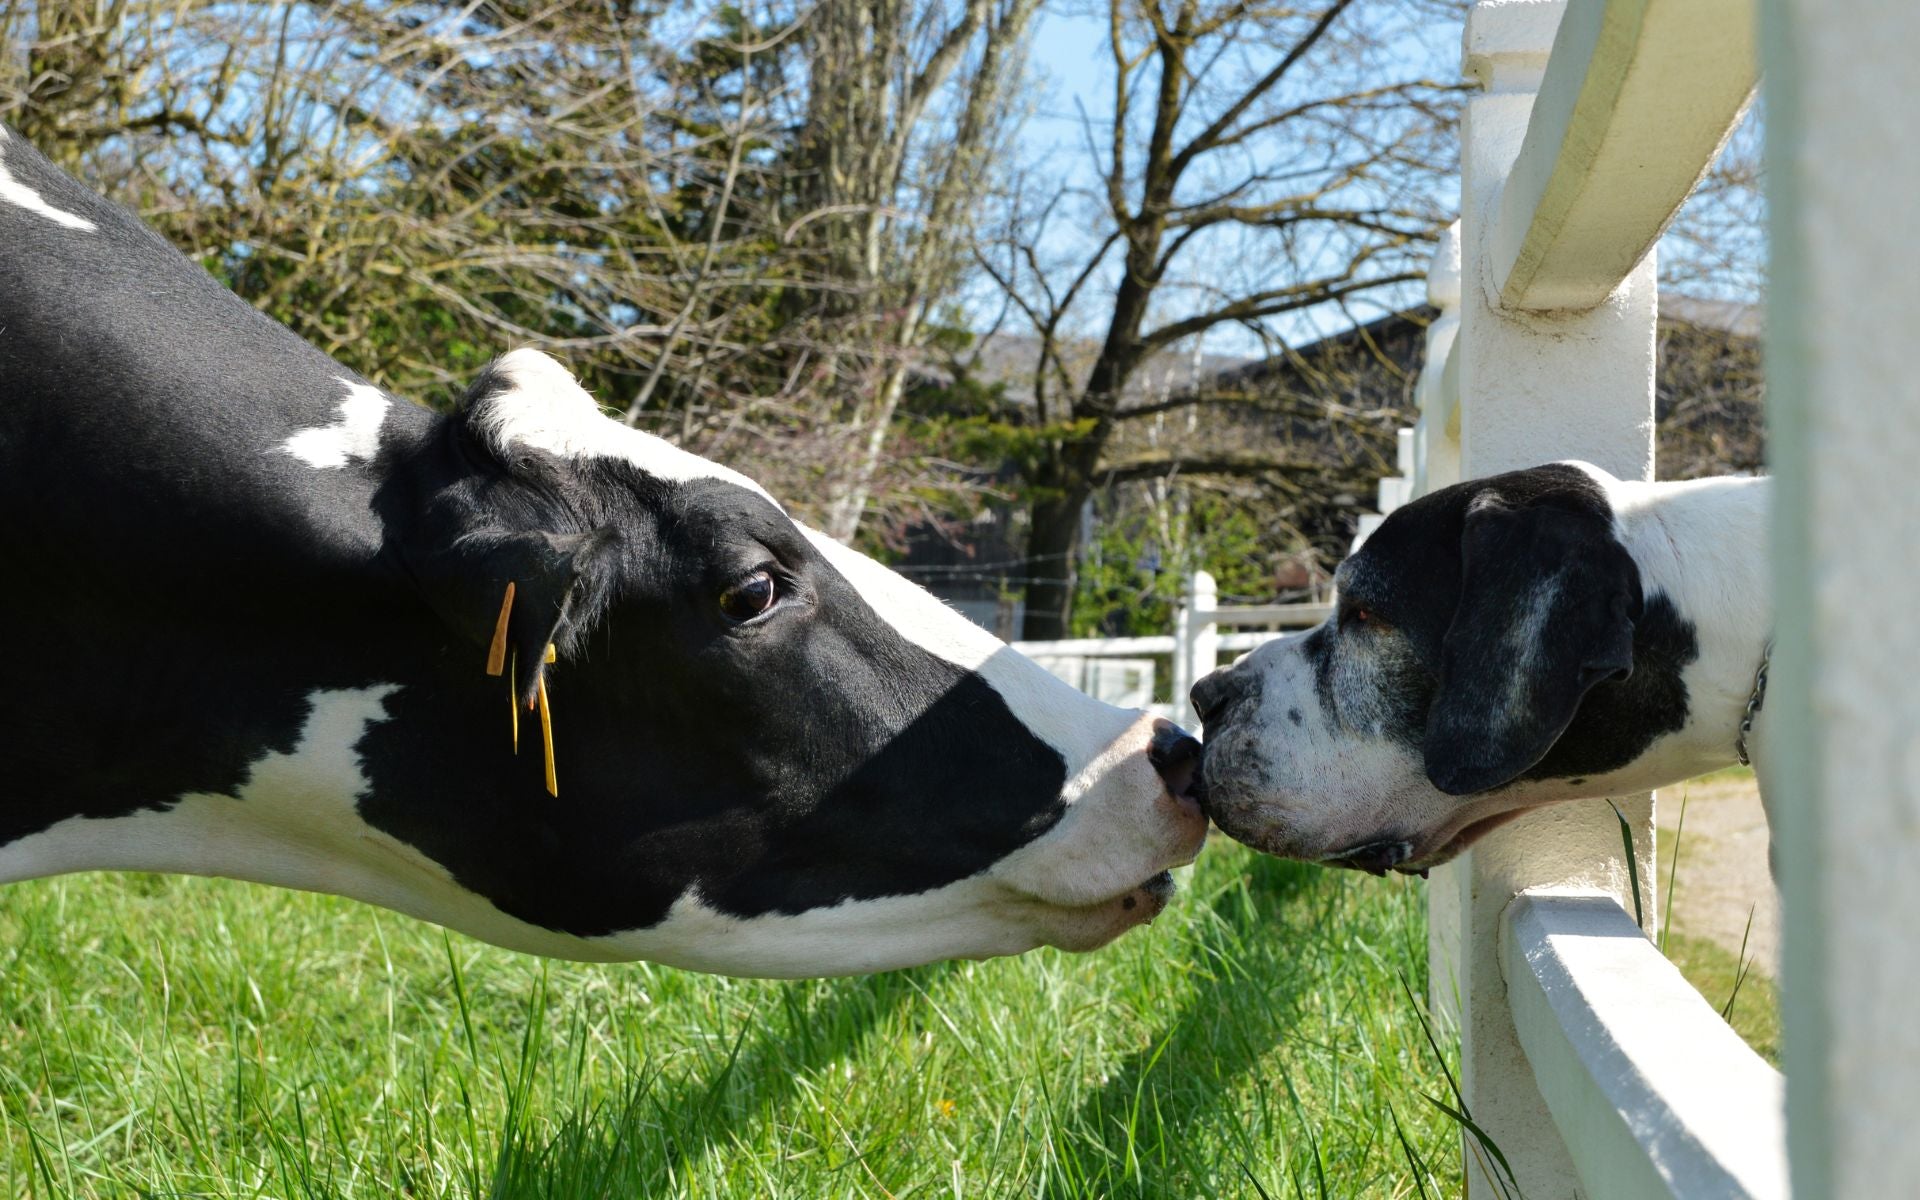 Haustier vs. Nutztier – ist das Eine mehr Wert als das Andere?